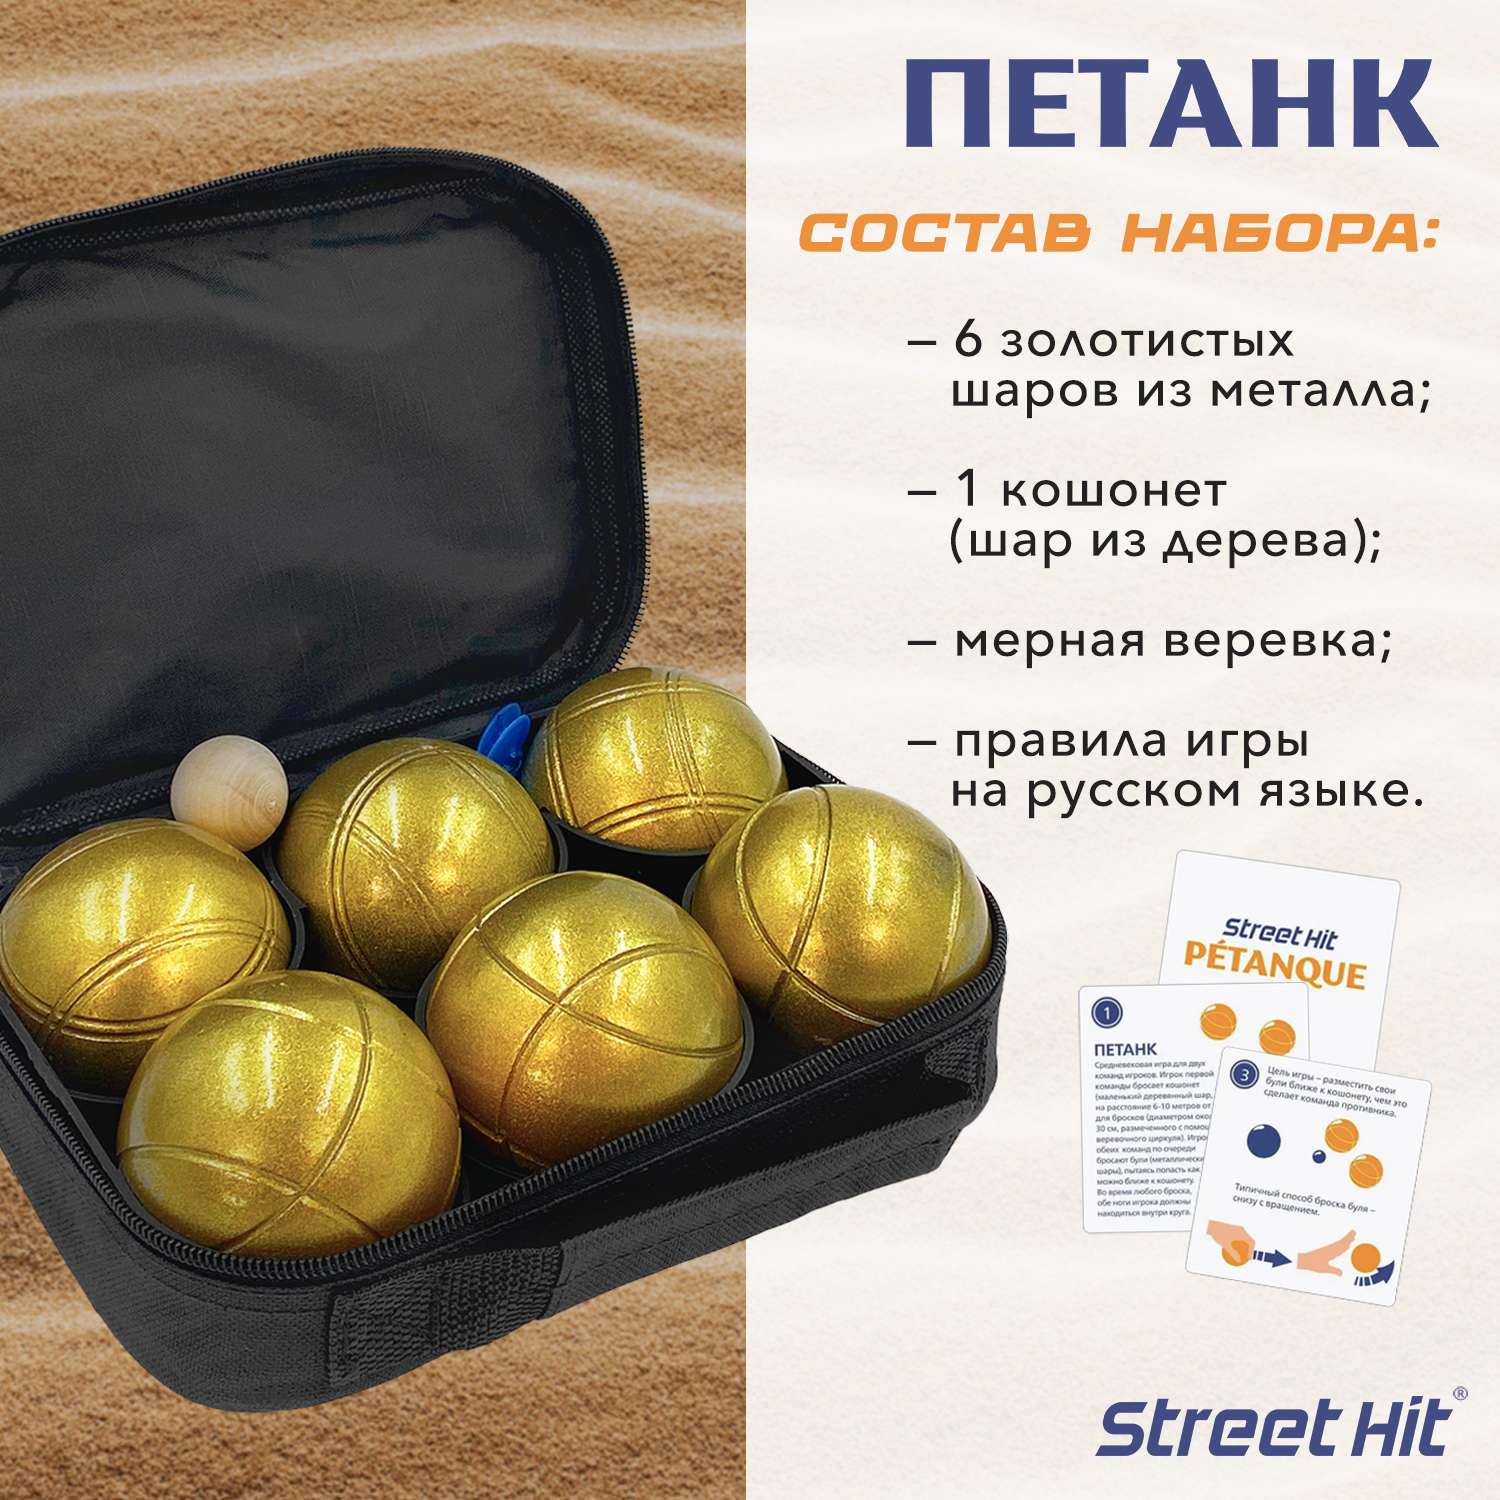 Набор для игры Street Hit Петанк Бочче 6 шаров золотой - фото 2